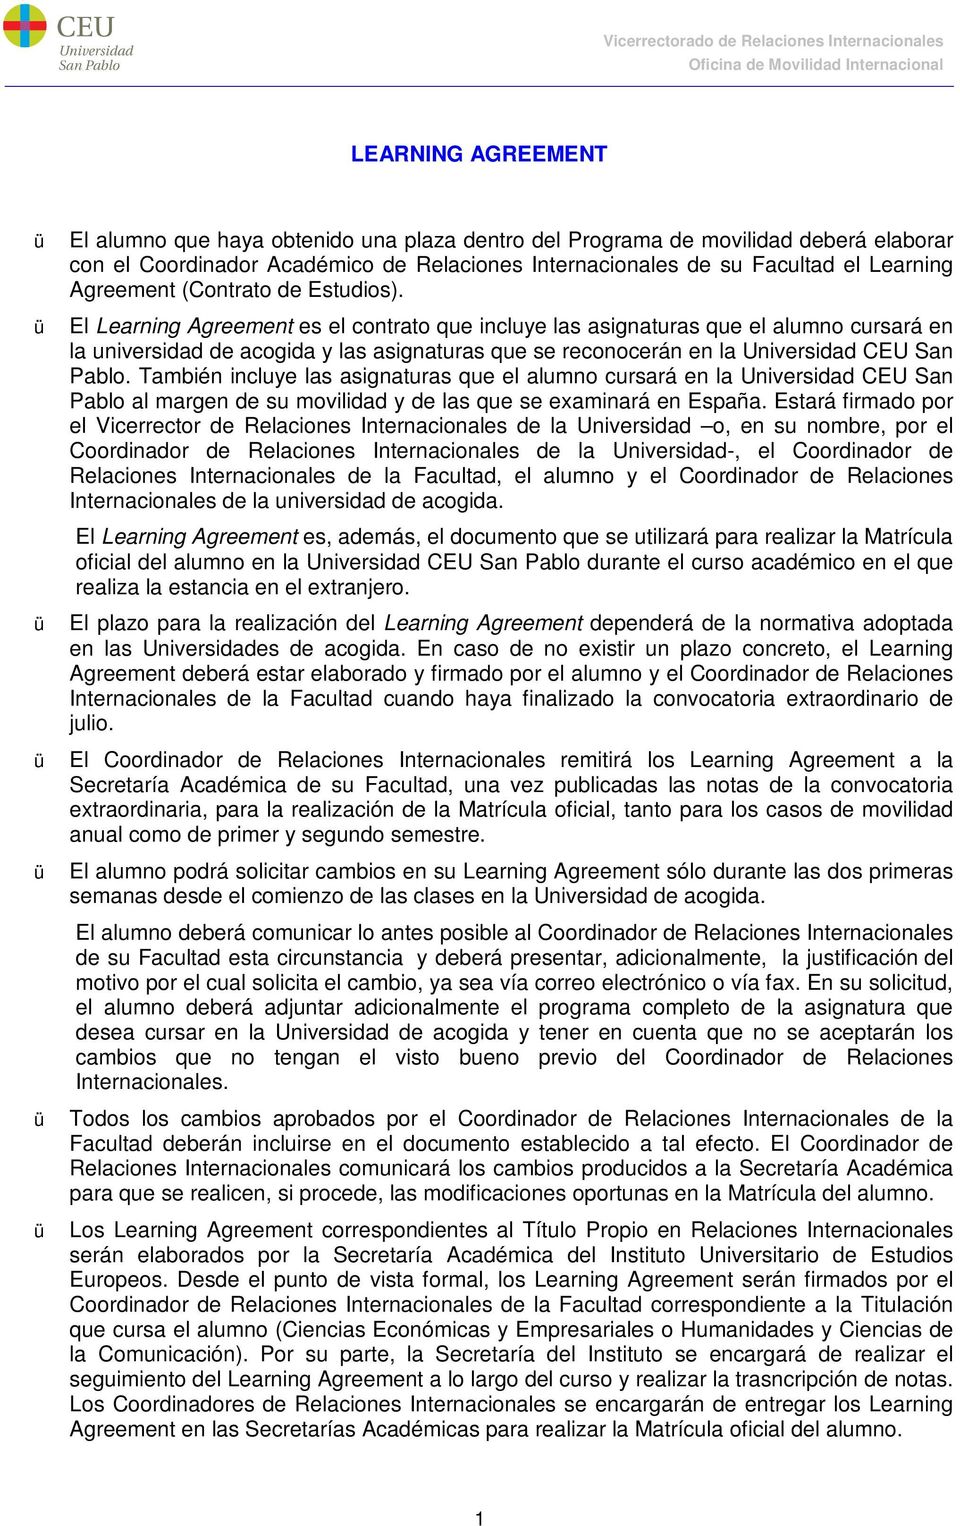 ü El Learning Agreement es el contrato que incluye las asignaturas que el alumno cursará en la universidad de acogida y las asignaturas que se reconocerán en la Universidad CEU San Pablo.